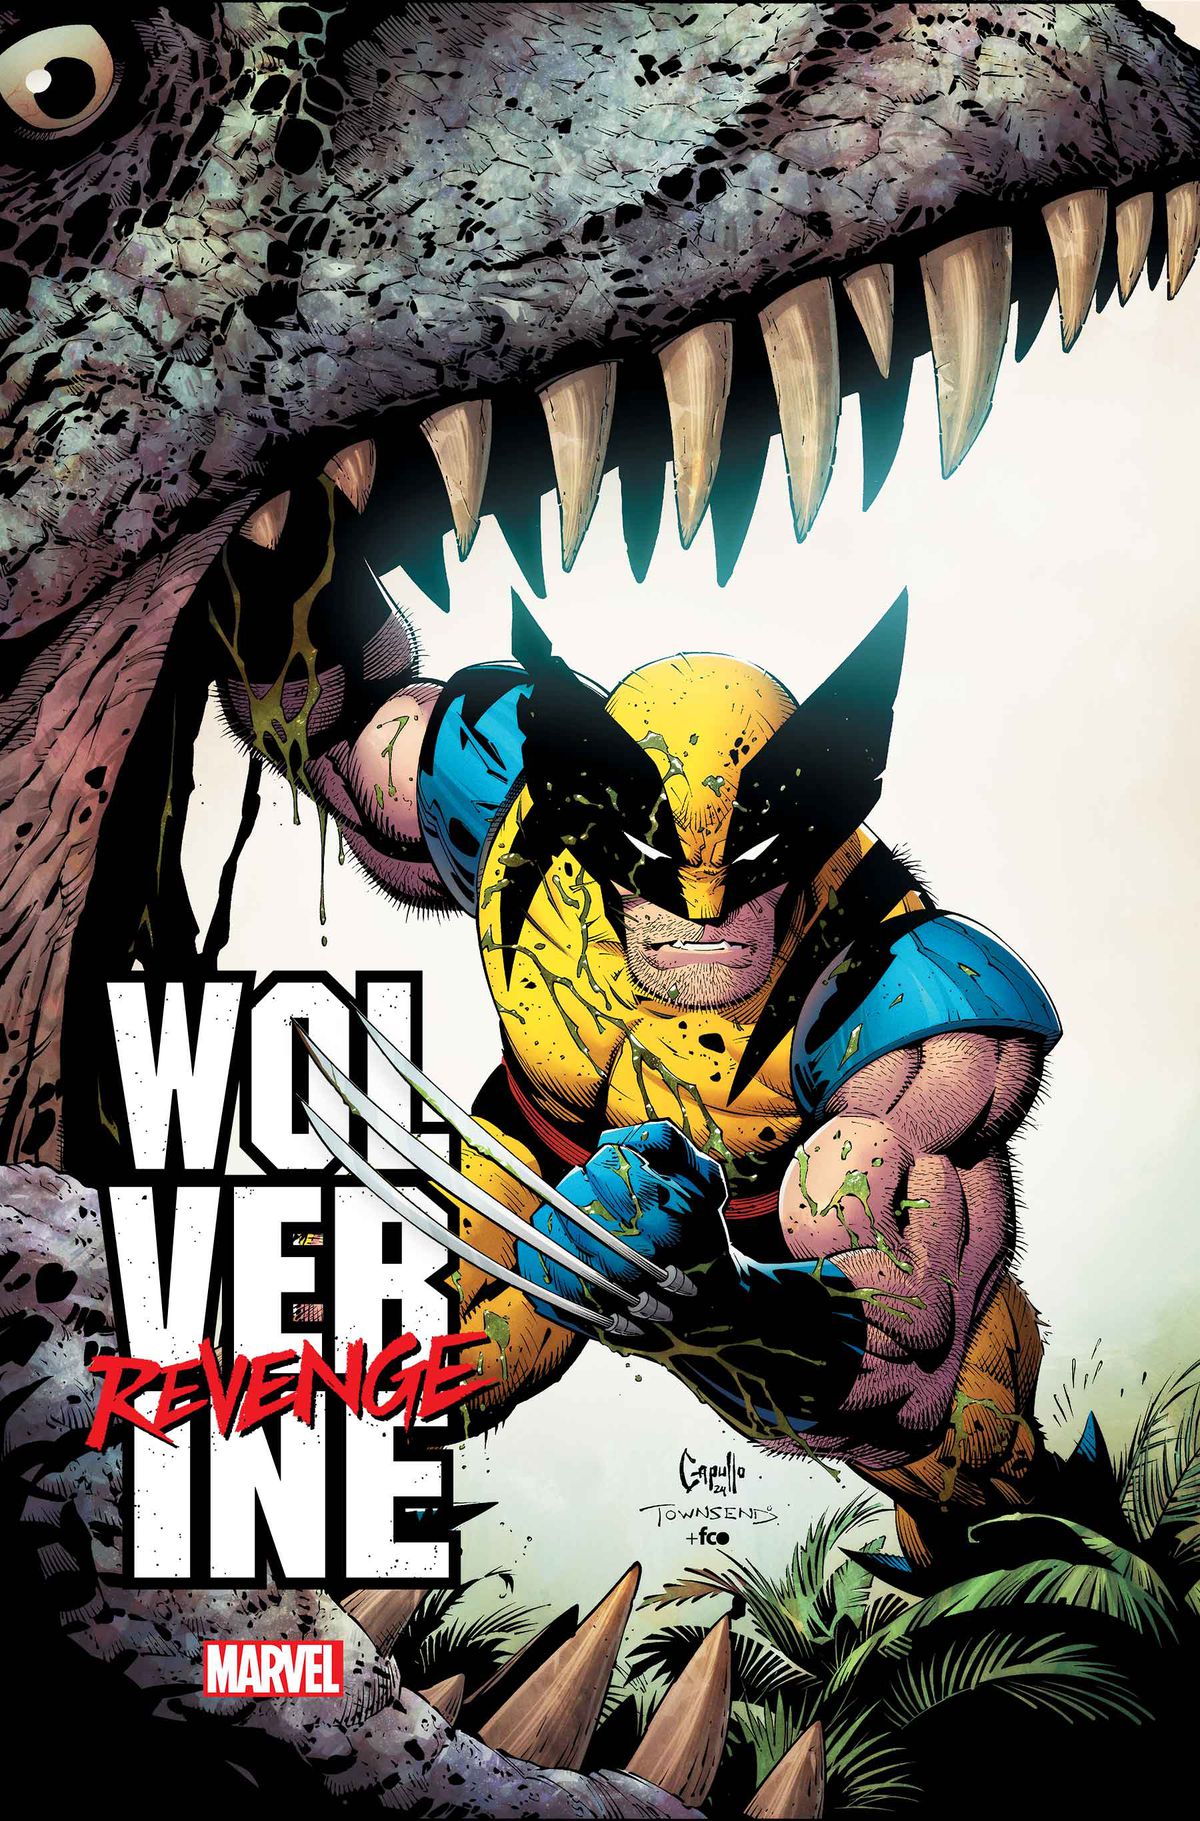 Wolverine wymachuje pazurem na okładce Wolverine: Revenge #1.  Stoi w szczękach czegoś, co wygląda jak tyranozaur, drugą ręką trzymając otwarte usta.